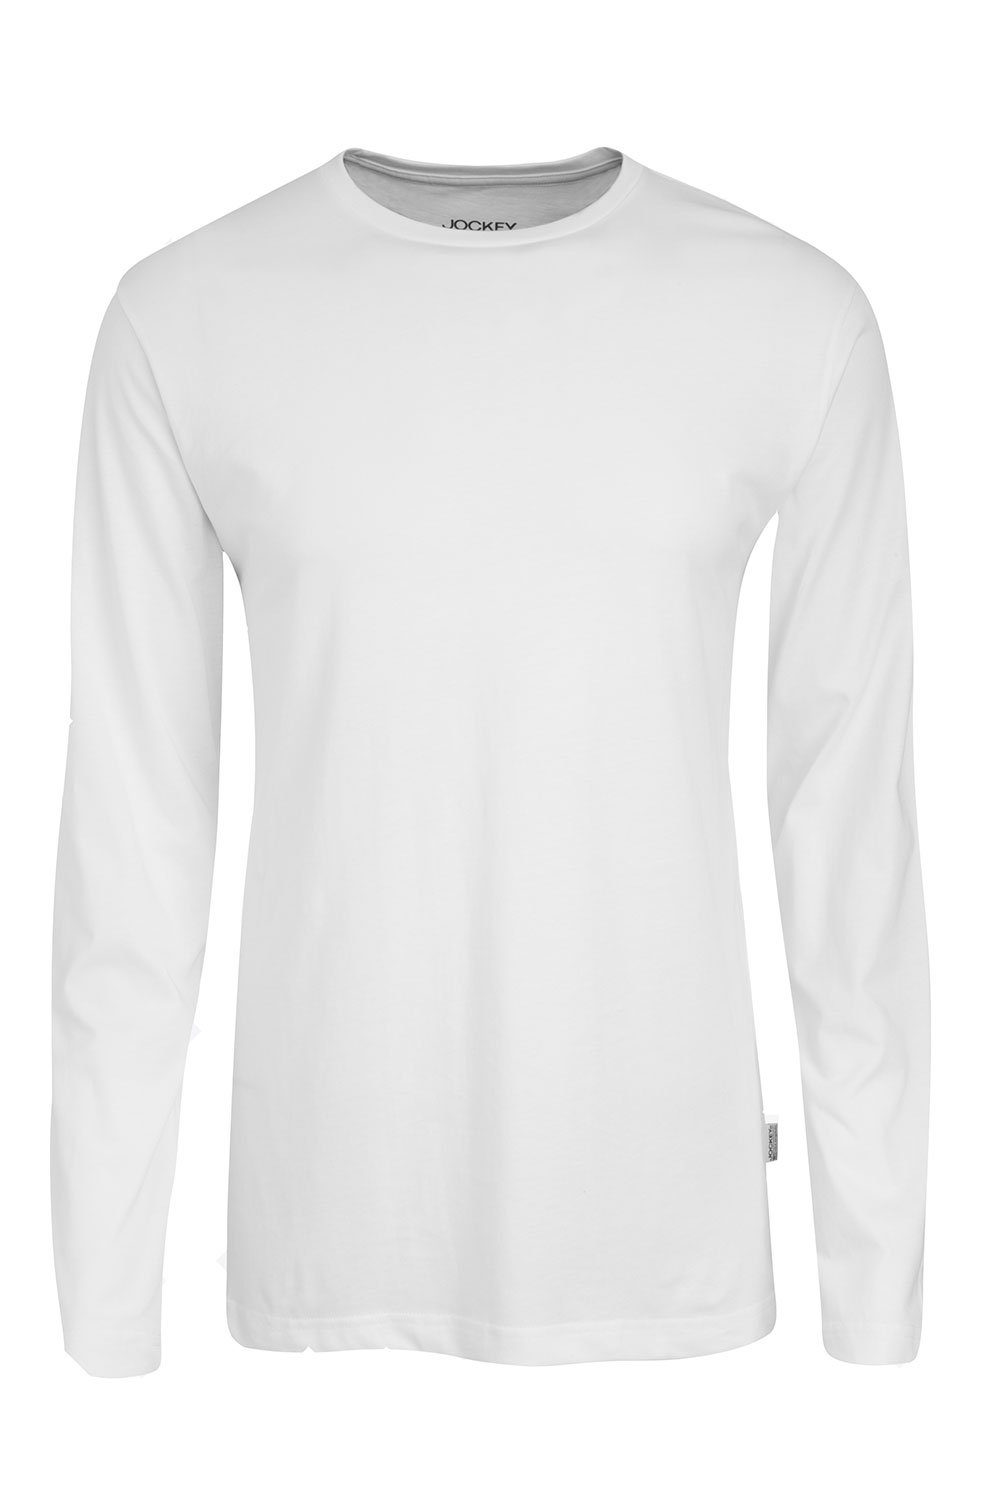 Top-Verkaufskraft Jockey Langarmshirt Longsleeve Shirt 120300H